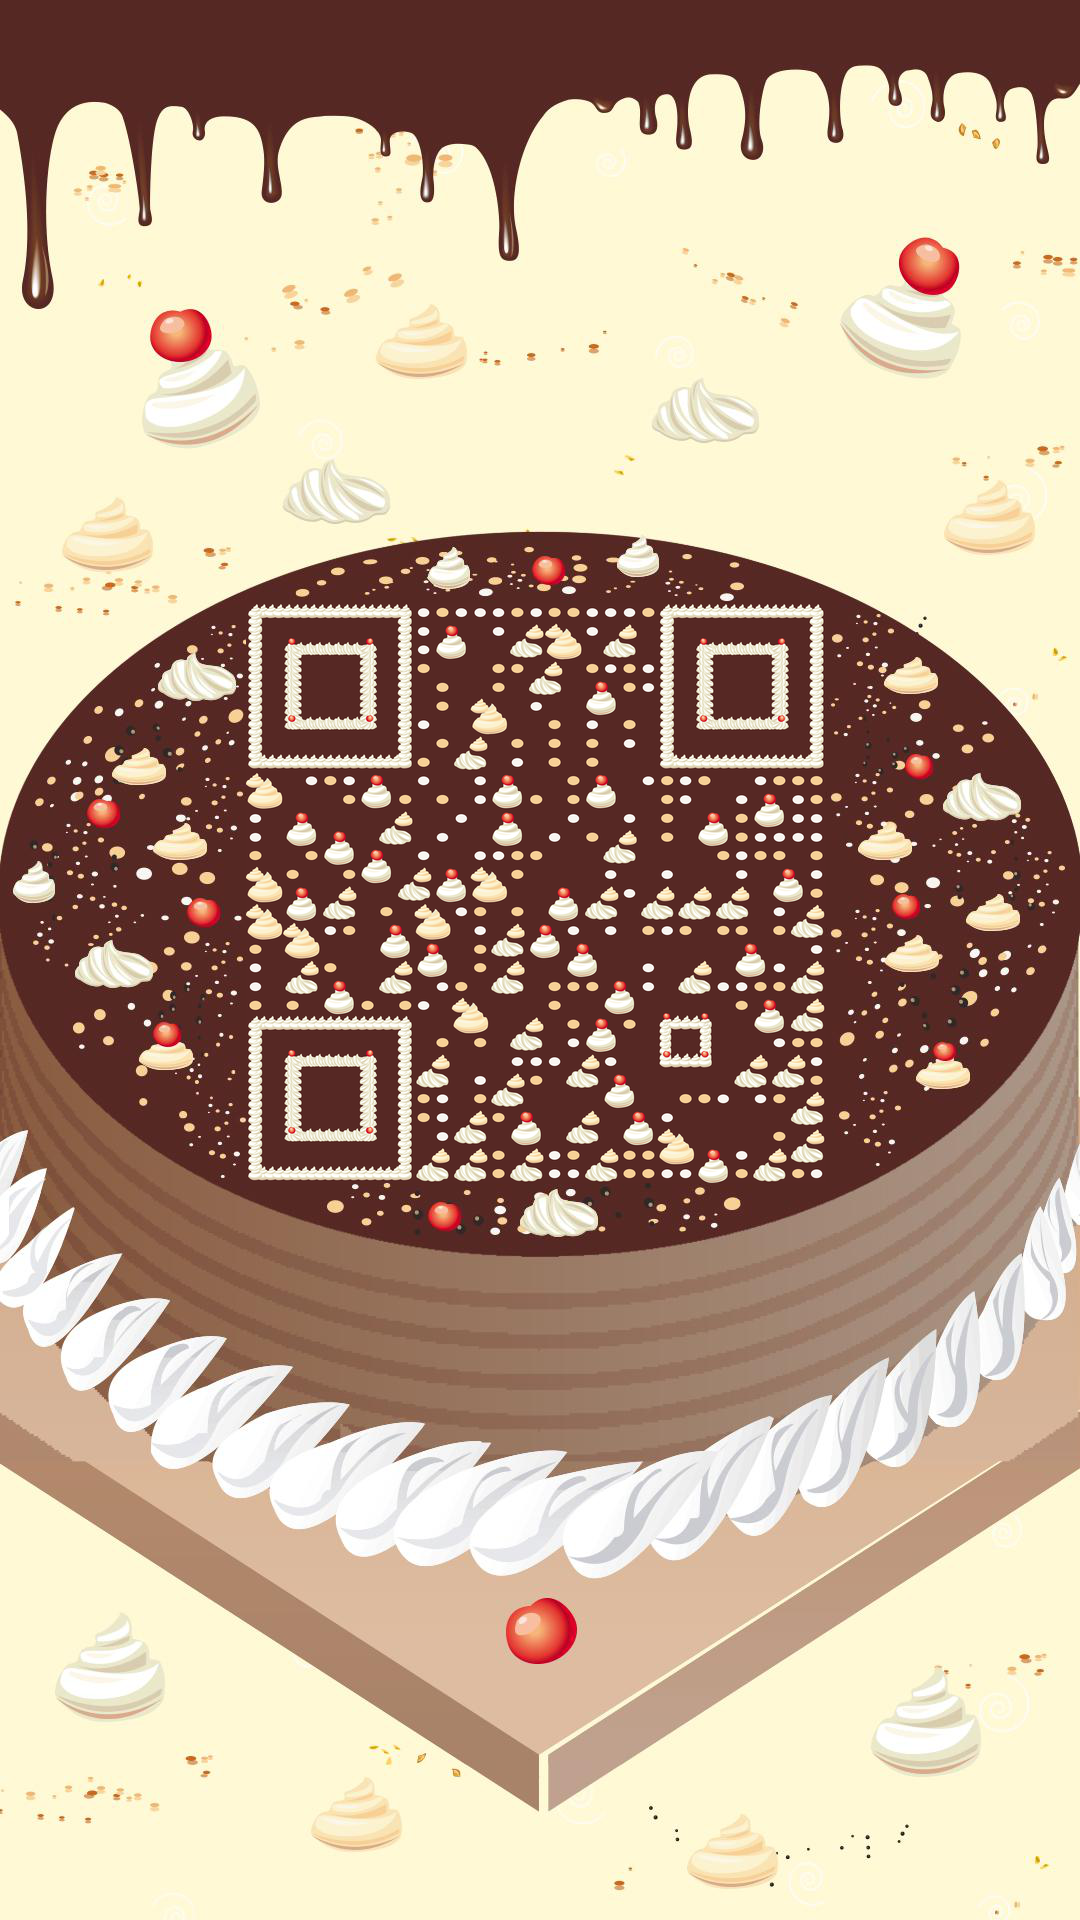 蛋糕房奶油生日庆祝甜品二维码生成器-平面静态-手机壁纸